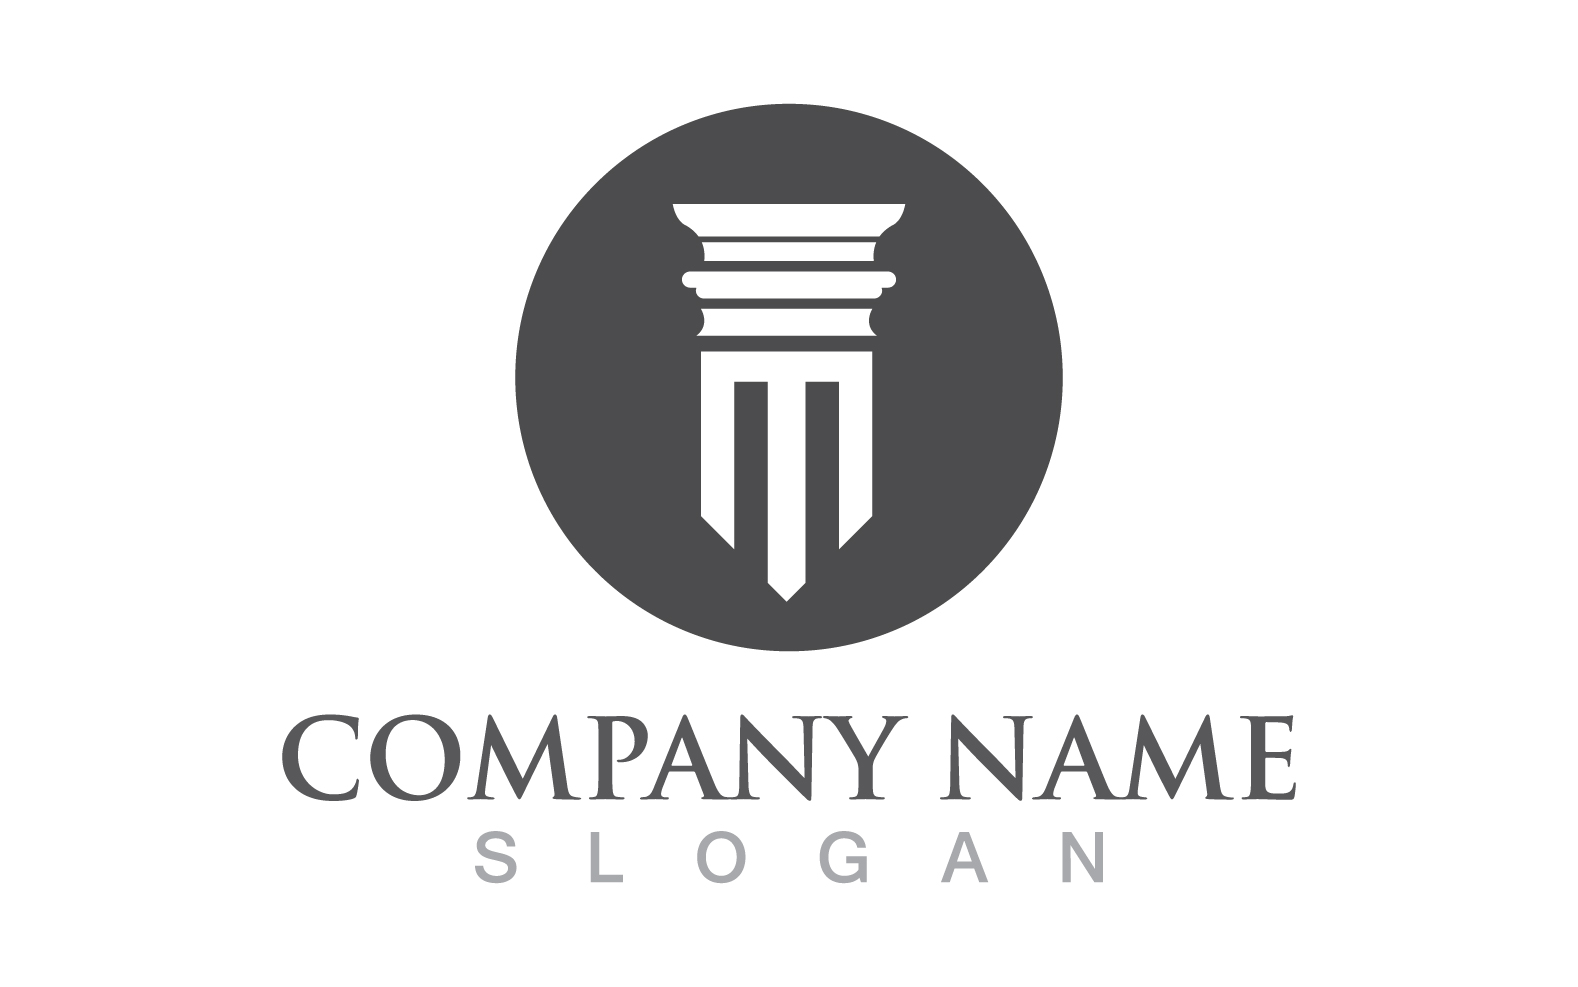 Pillar logo and symbol design vector v10